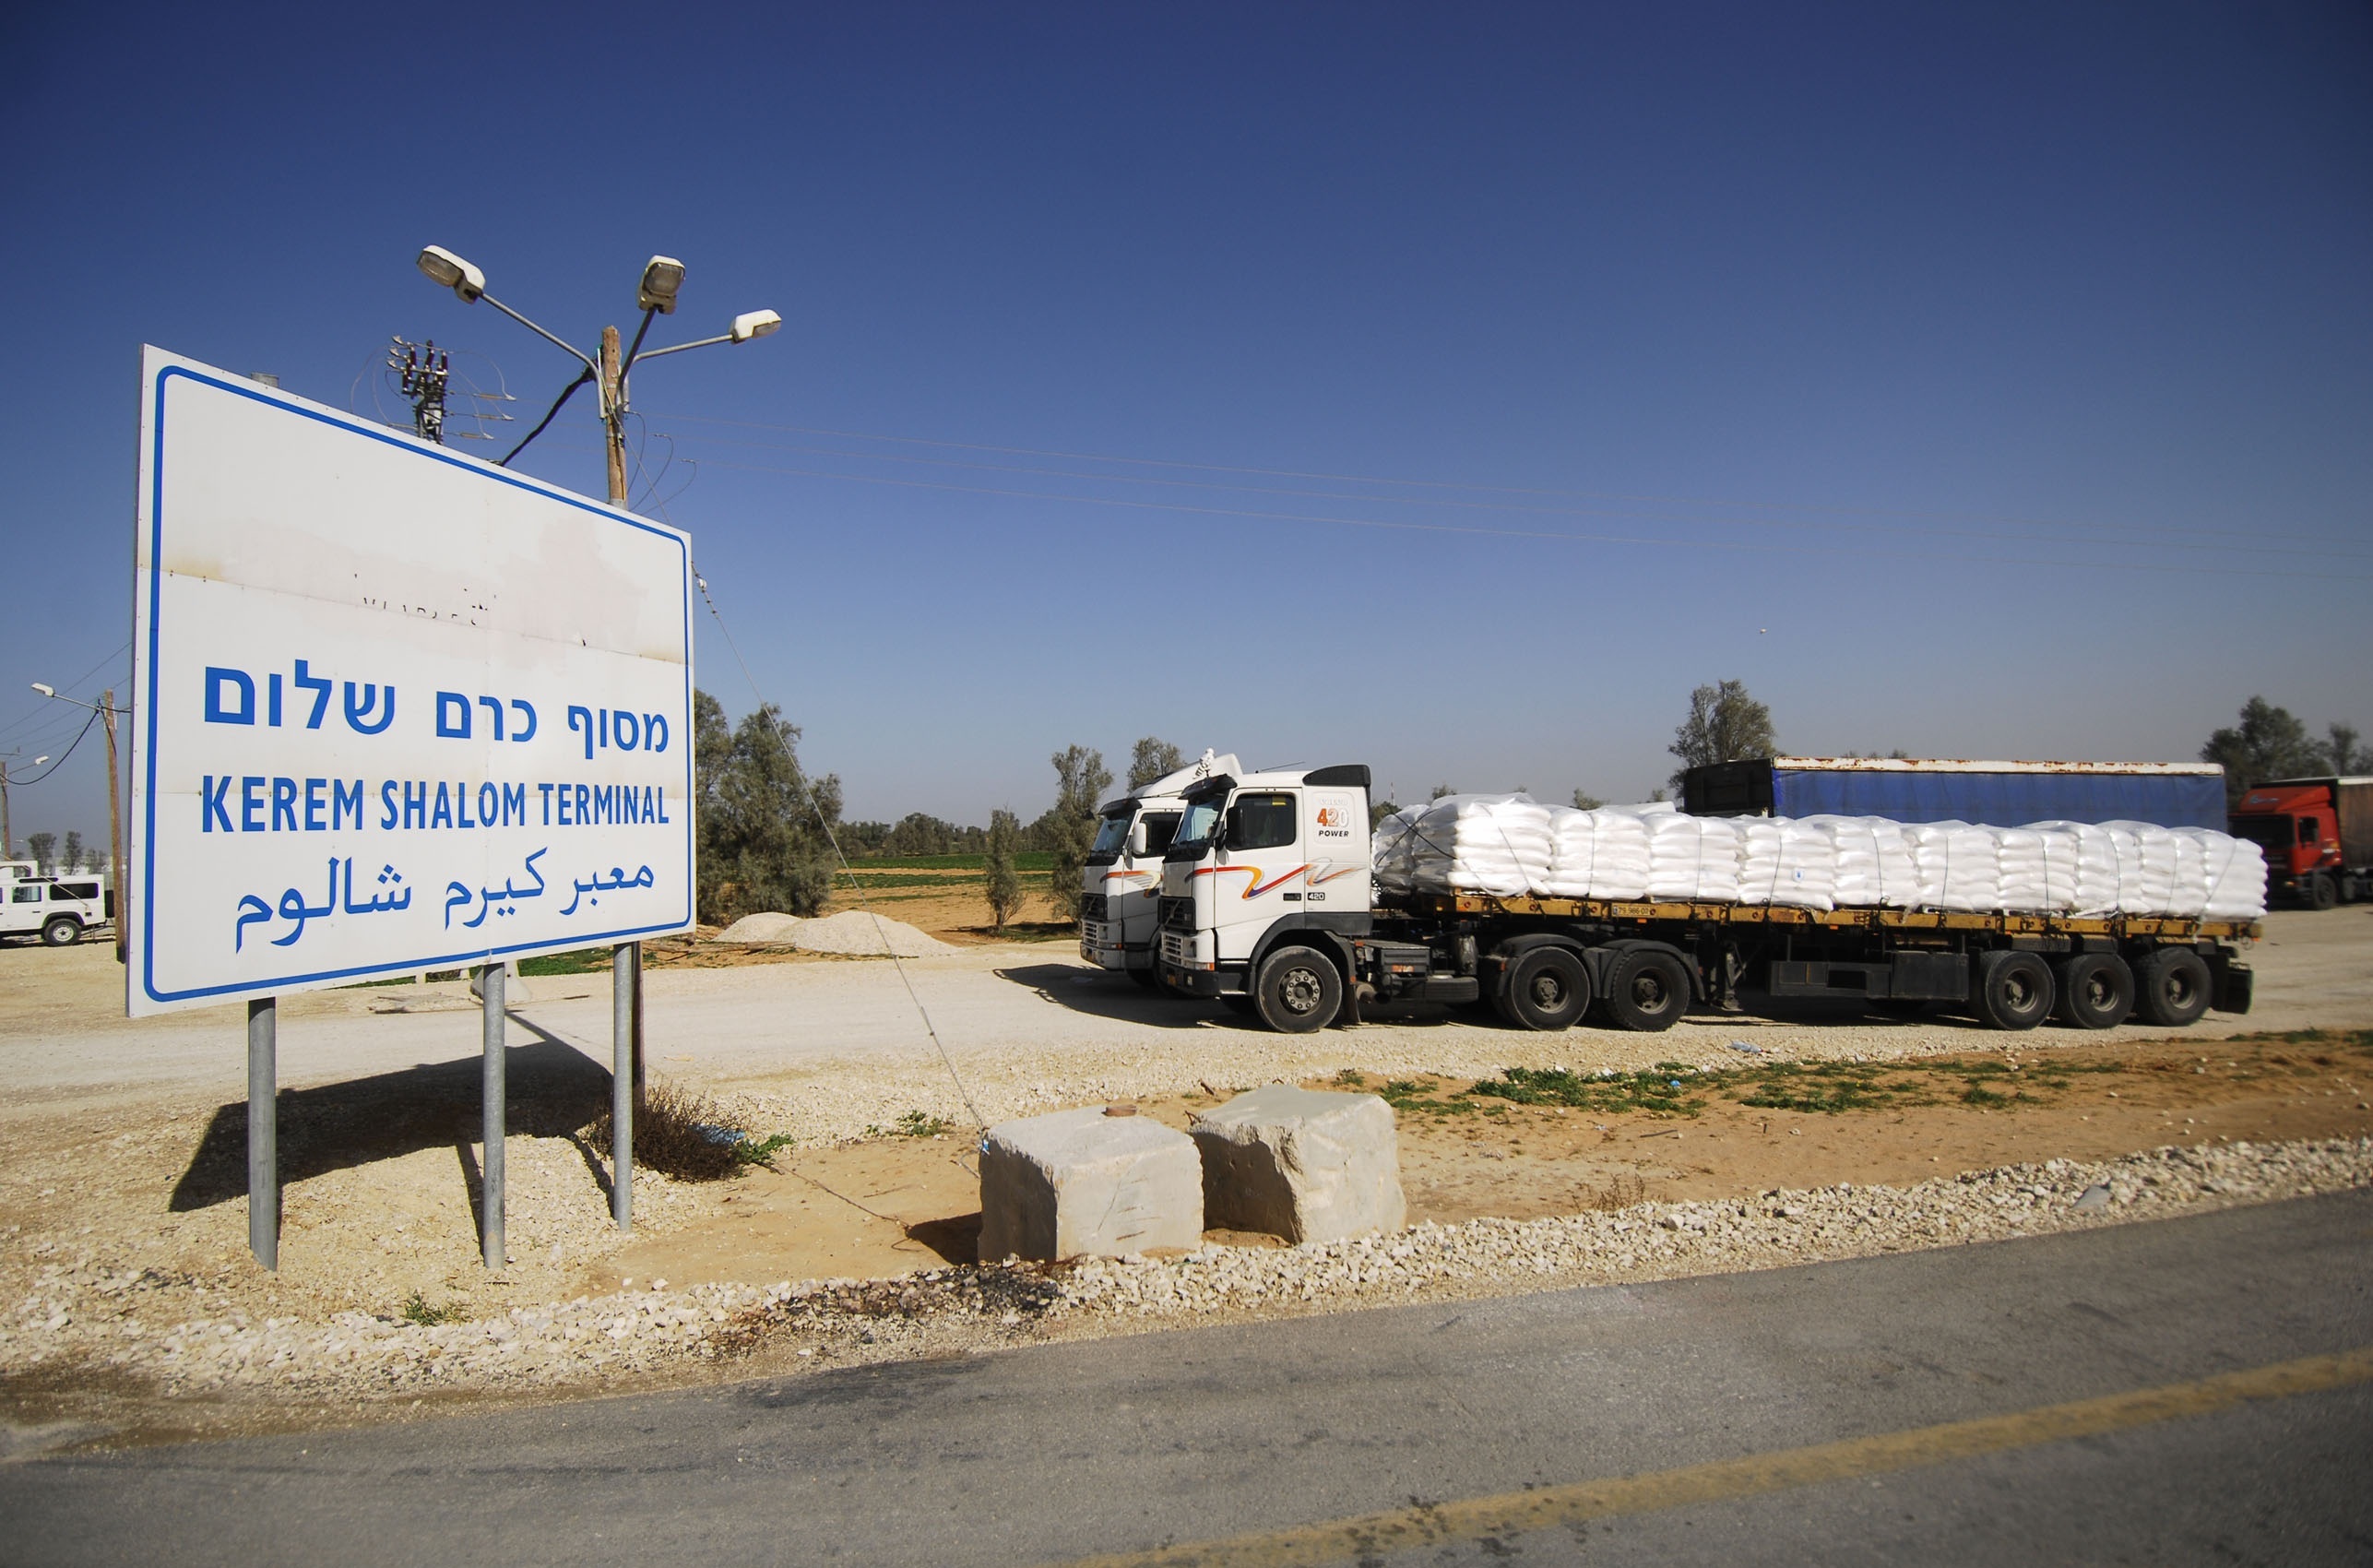 إسرائيل أجلت إدخال مواد بناء لغزة لأجل غير مسمى
